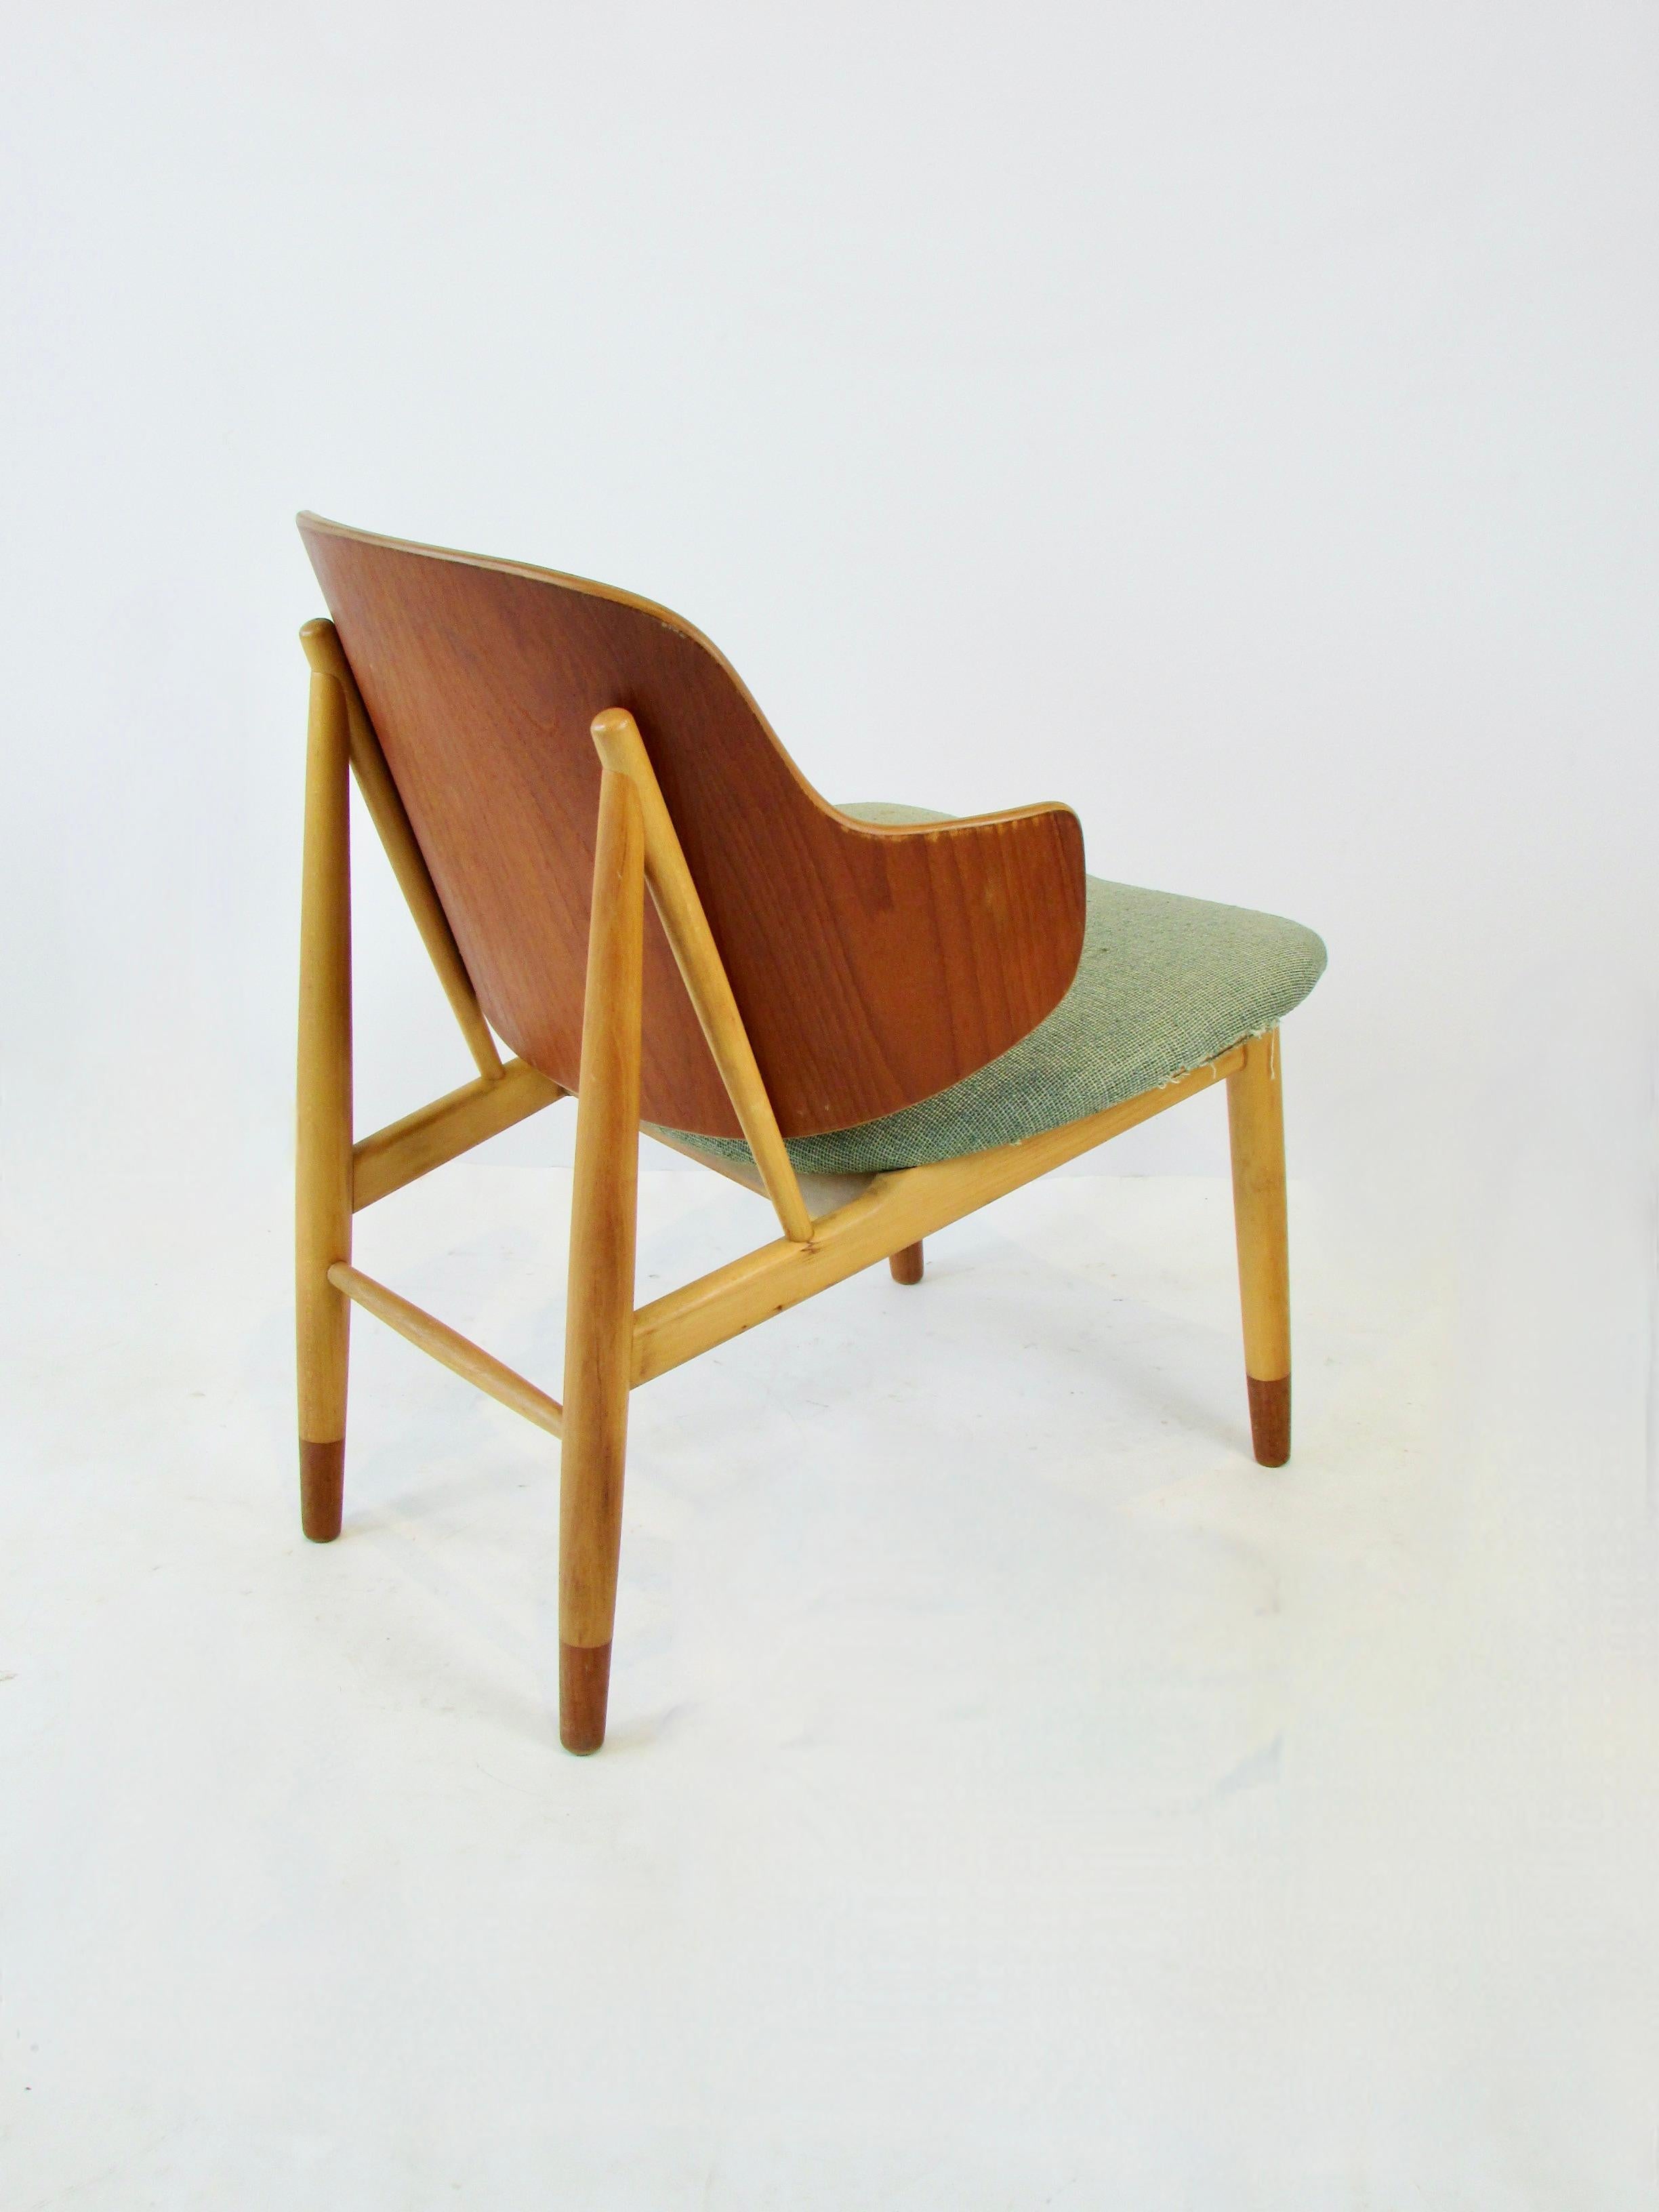 Teak Ib Kofod-Larsen Penguin chair for Christiansen and Larsen Denmark 1955 For Sale